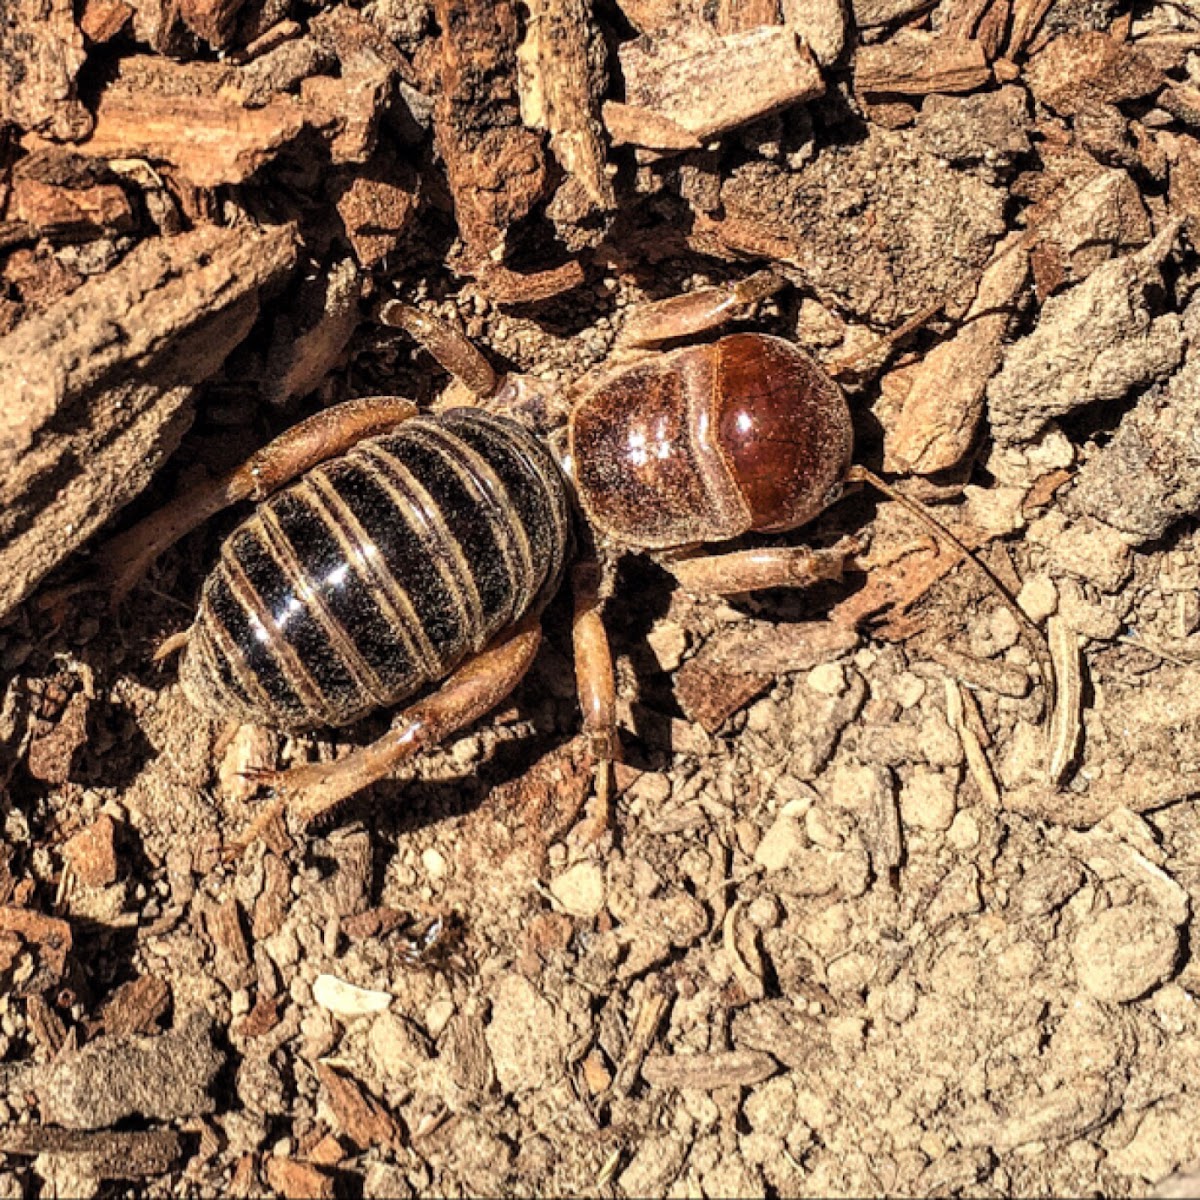 Potato Bug or Jerusalem Cricket